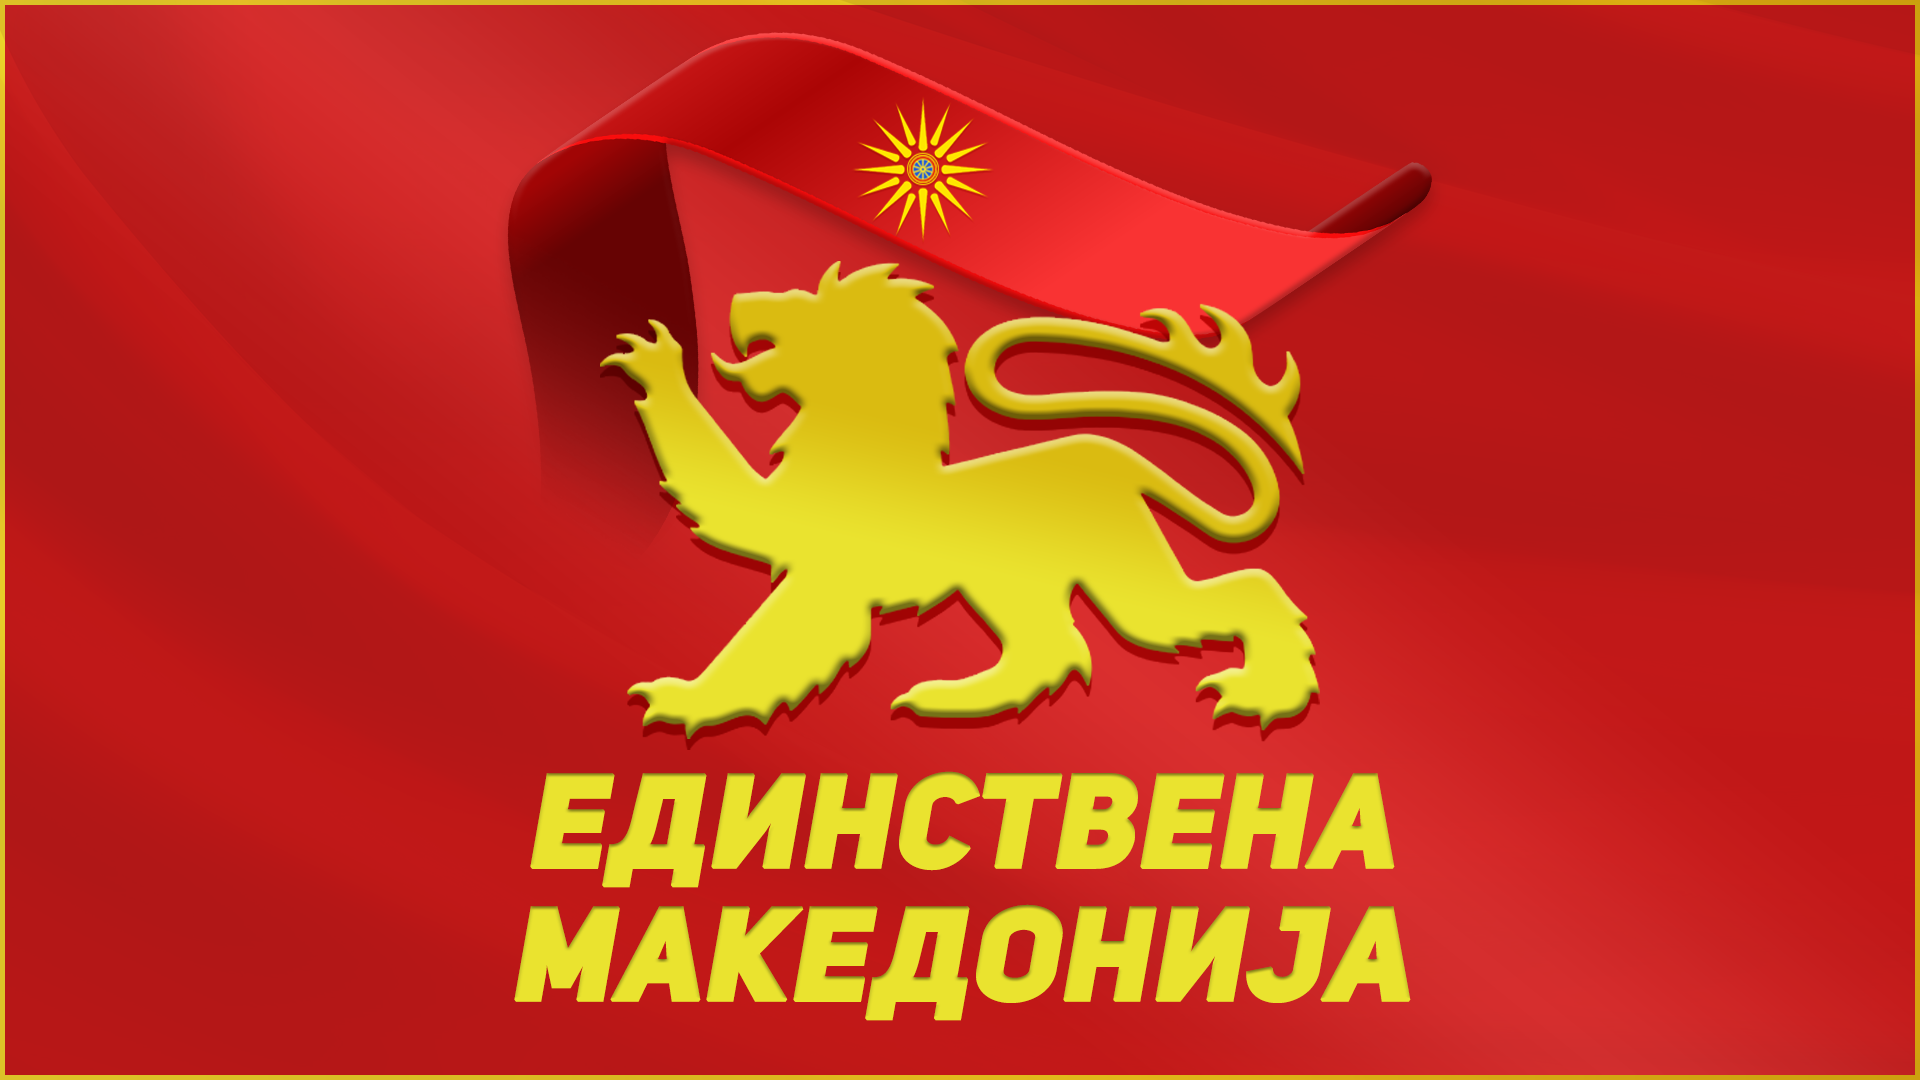 Единствена Македонија до бугарските власти. Не ви вреди затворањето на Македонскиот клуб, процесот за Македонците е тргнат, храбро, решително и никој не може да го запре